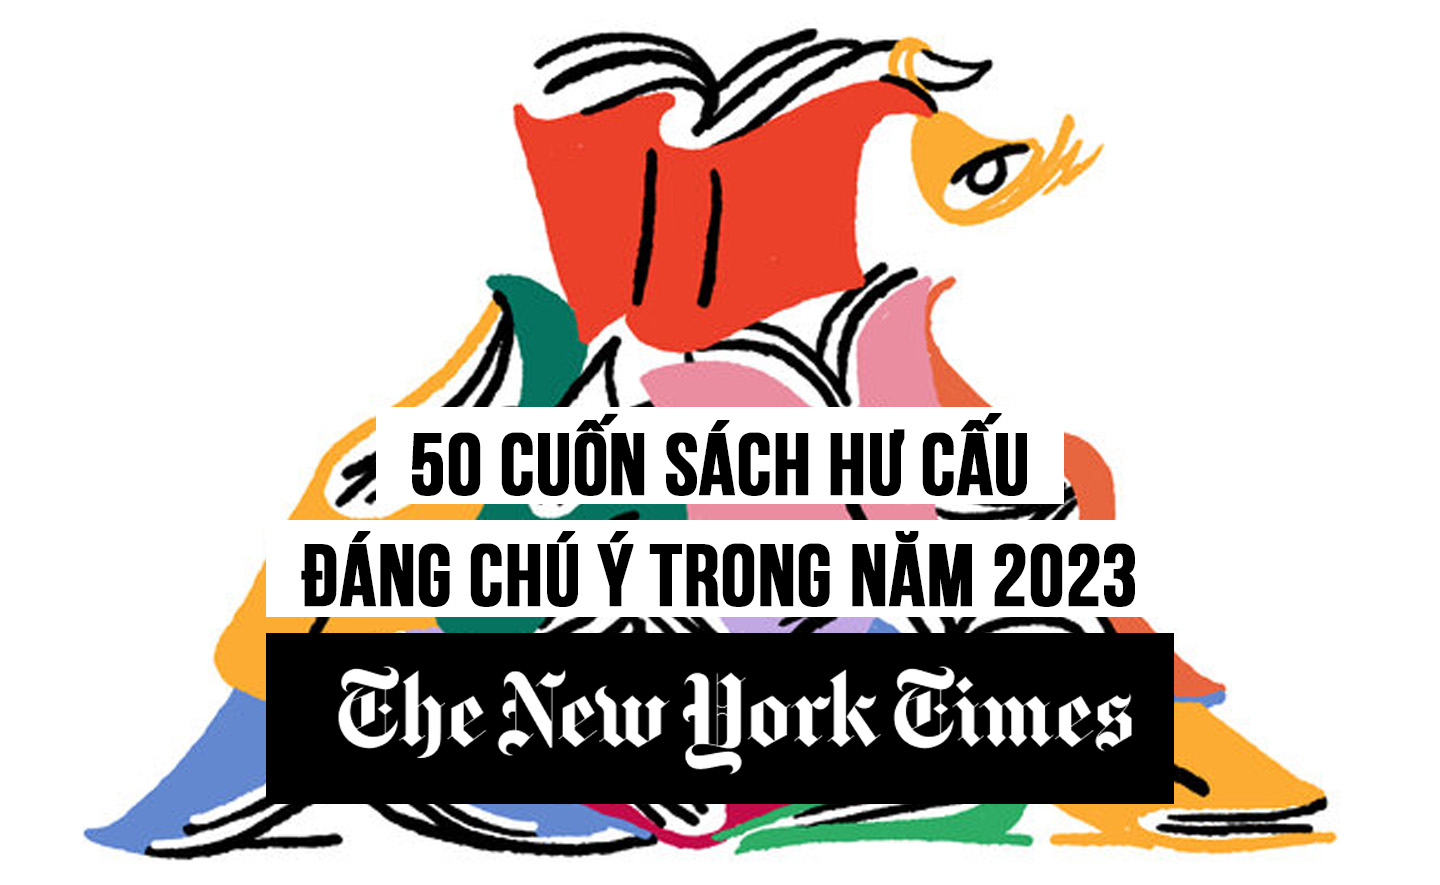 The New York Times vừa công bố 100 cuốn sách đáng chú ý năm 2023: 50 cuốn sách hư cấu nổi bật nhất năm 2023